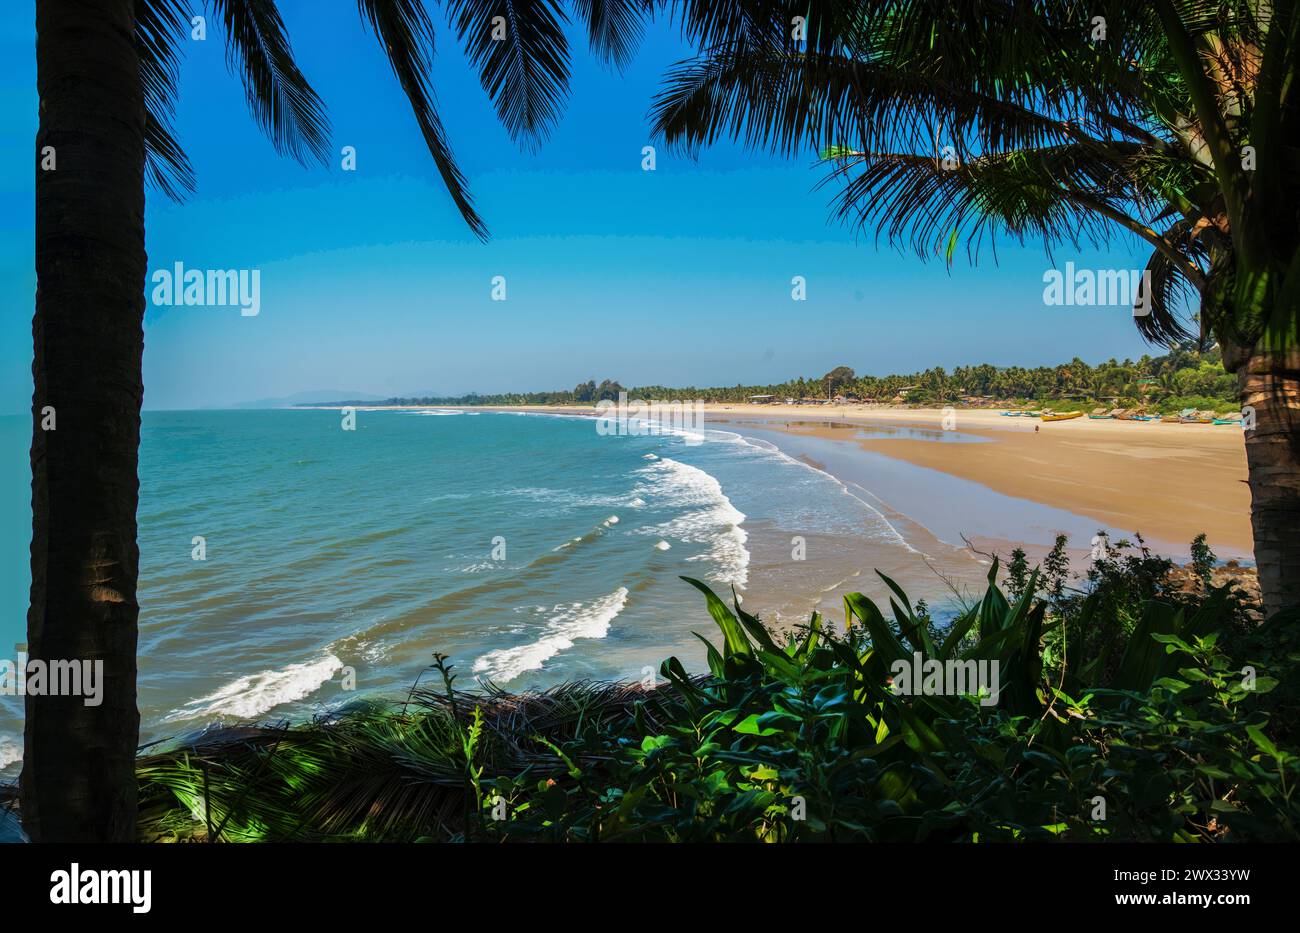 Panorama des fantastischen Sandstrandes in Südindien - Goa (oder Kerala oder Karnataka). Es gibt auch Fischerdorf - viele Fischerboote an der Küste Stockfoto